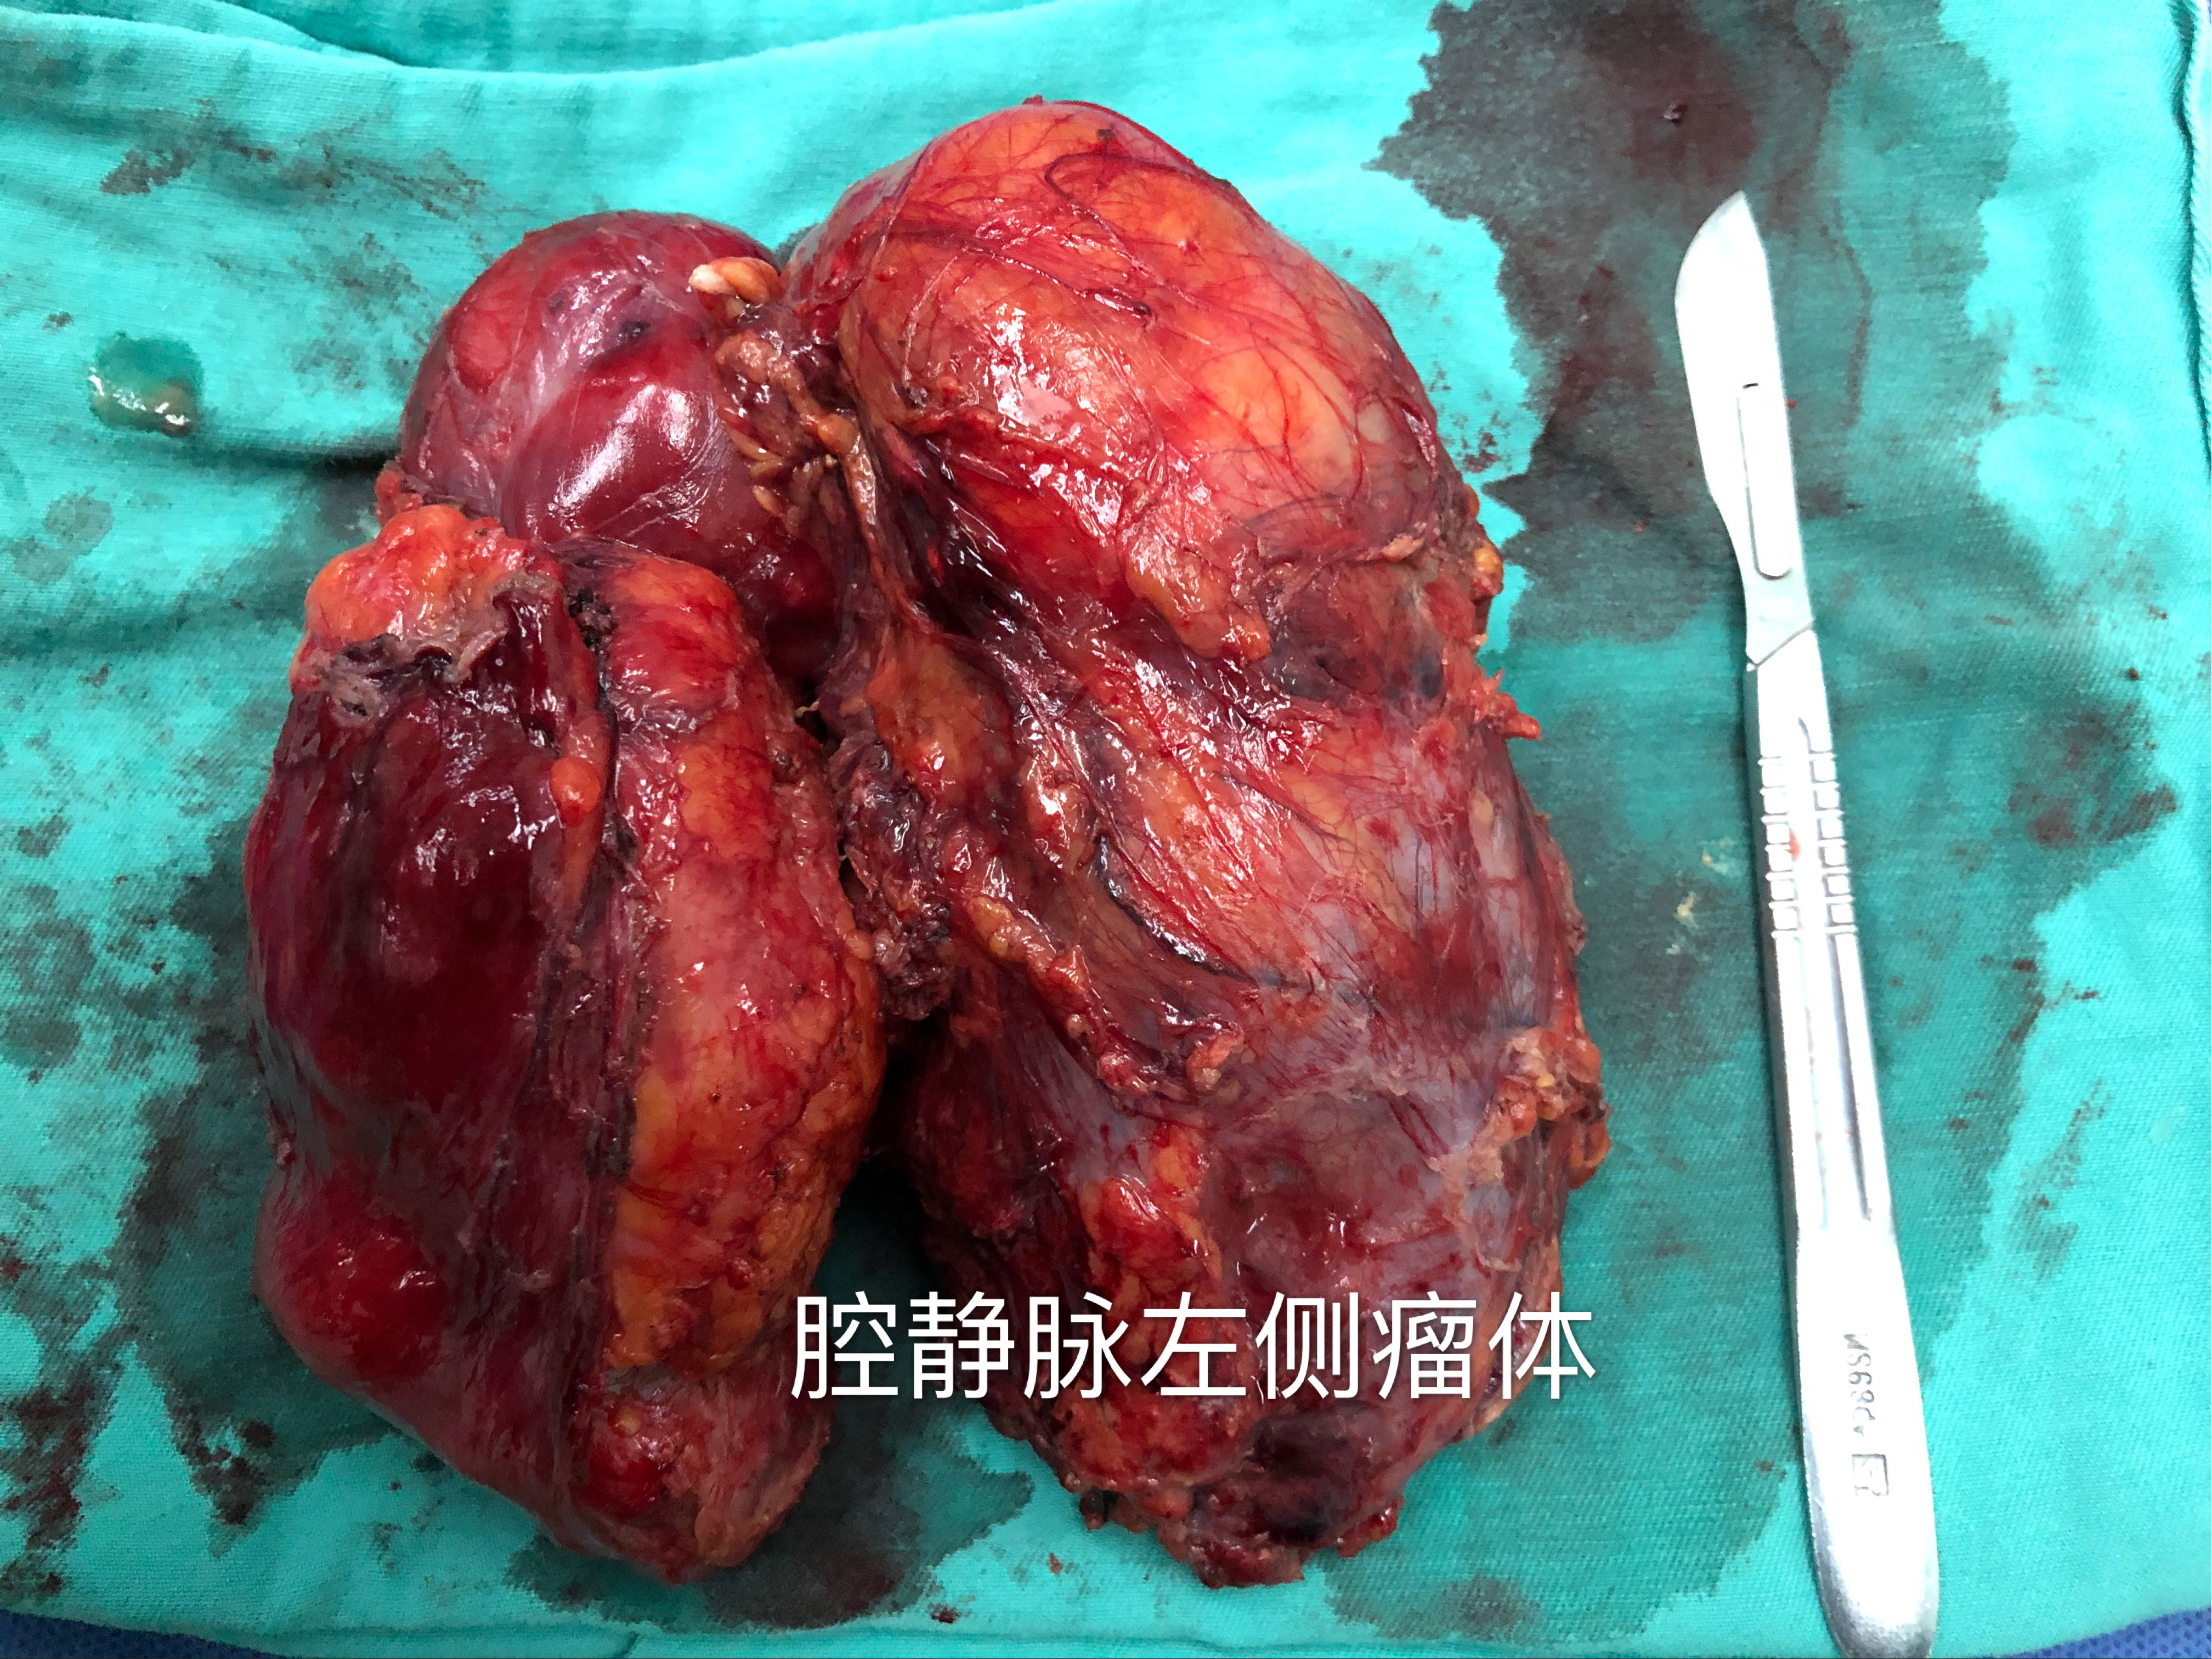 腹膜后巨大畸胎瘤一例 